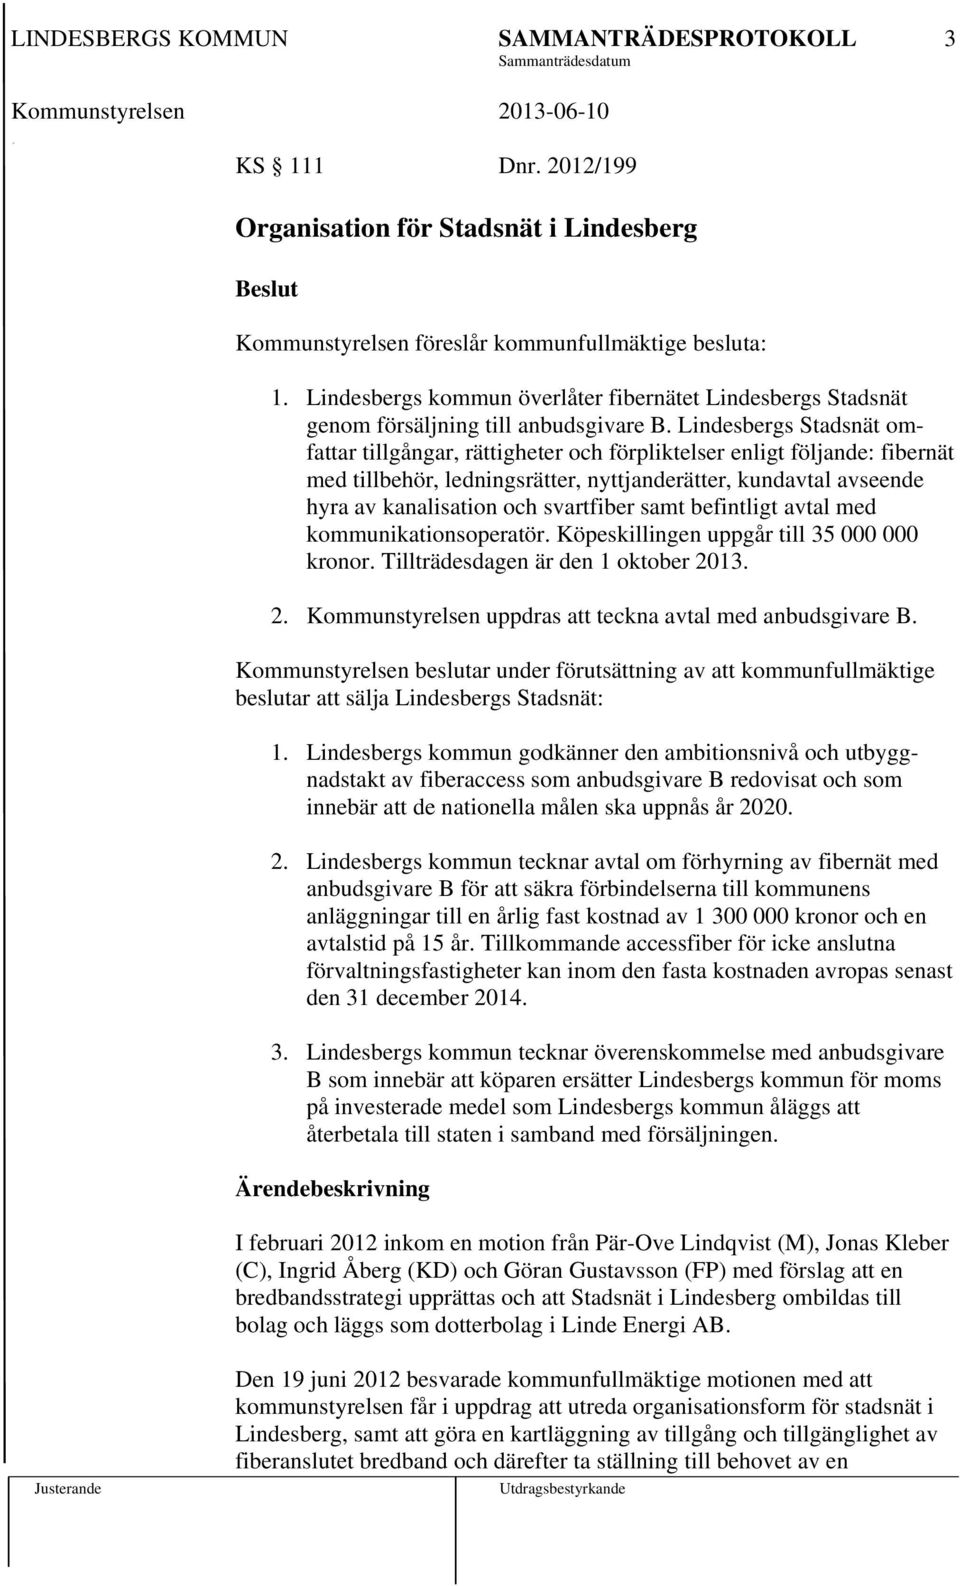 Lindesbergs Stadsnät omfattar tillgångar, rättigheter och förpliktelser enligt följande: fibernät med tillbehör, ledningsrätter, nyttjanderätter, kundavtal avseende hyra av kanalisation och